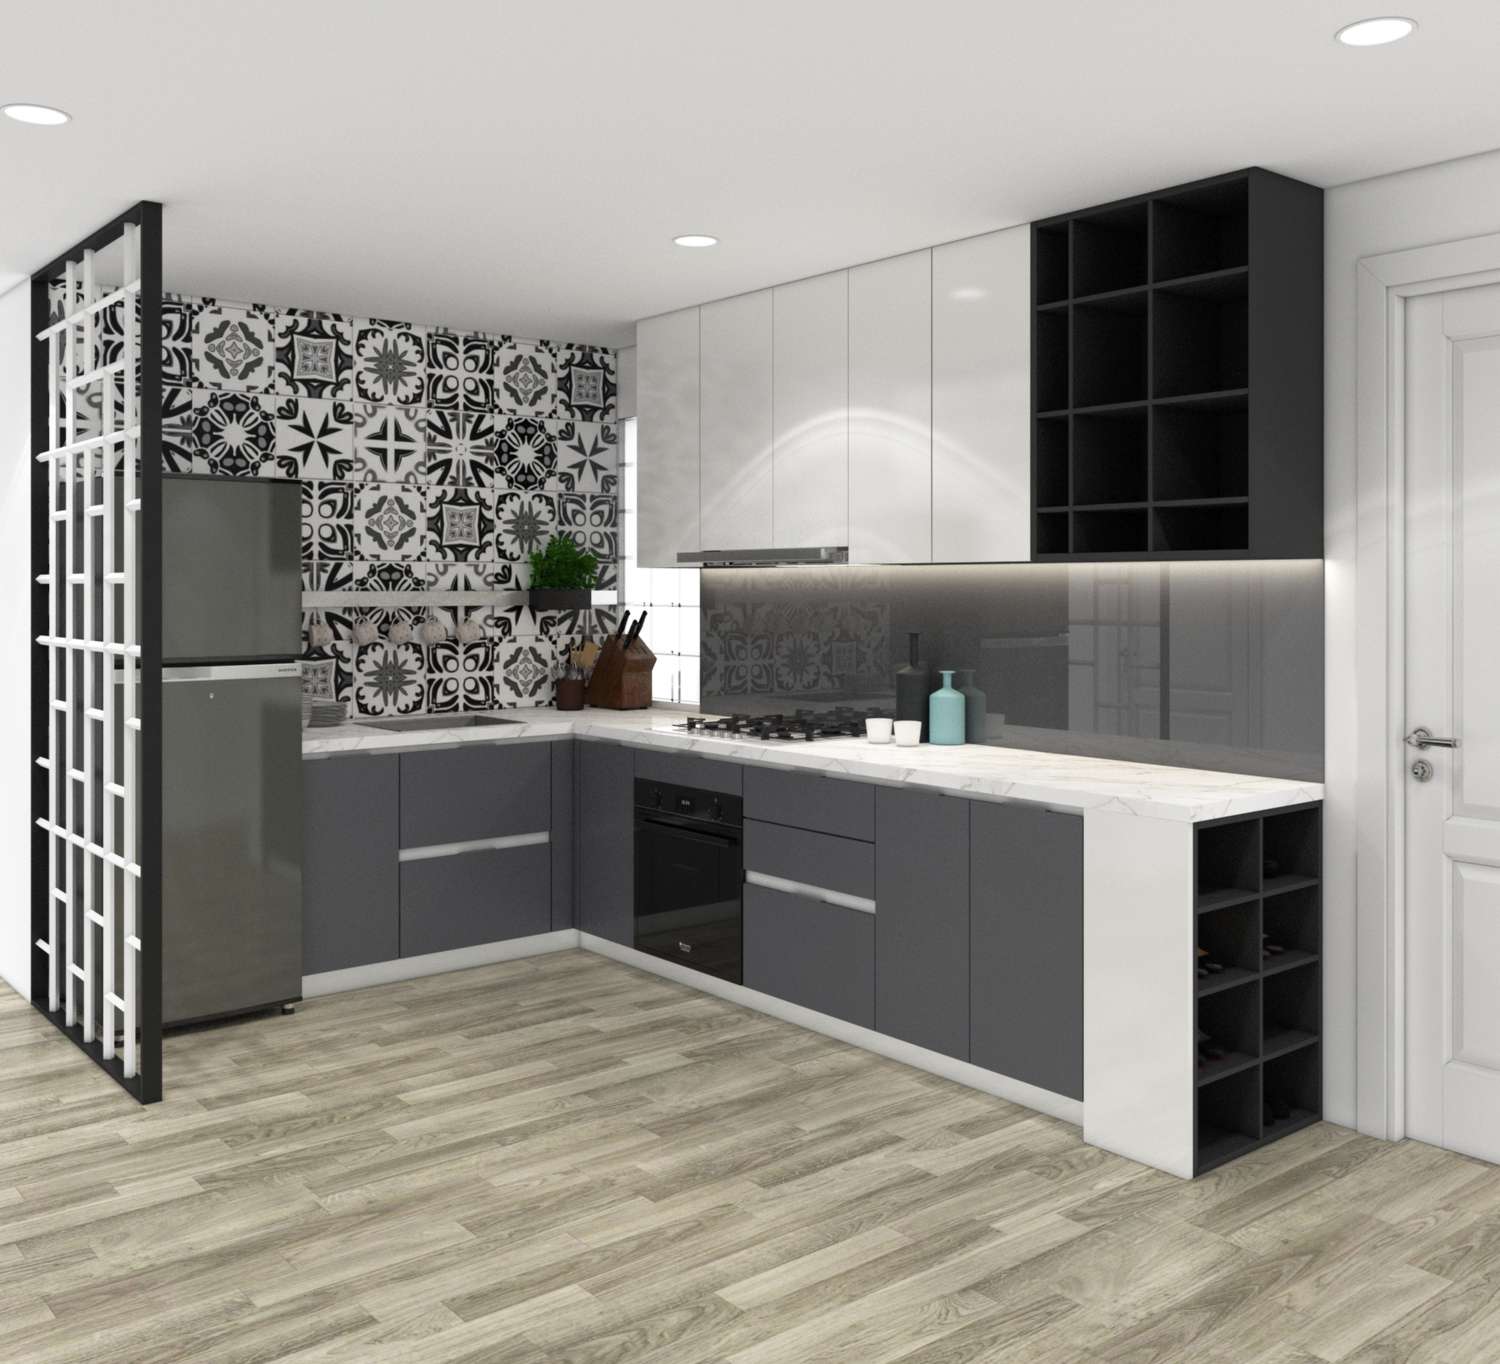 Tủ bếp màu đen trắng tạo không gian mở và tiện nghi